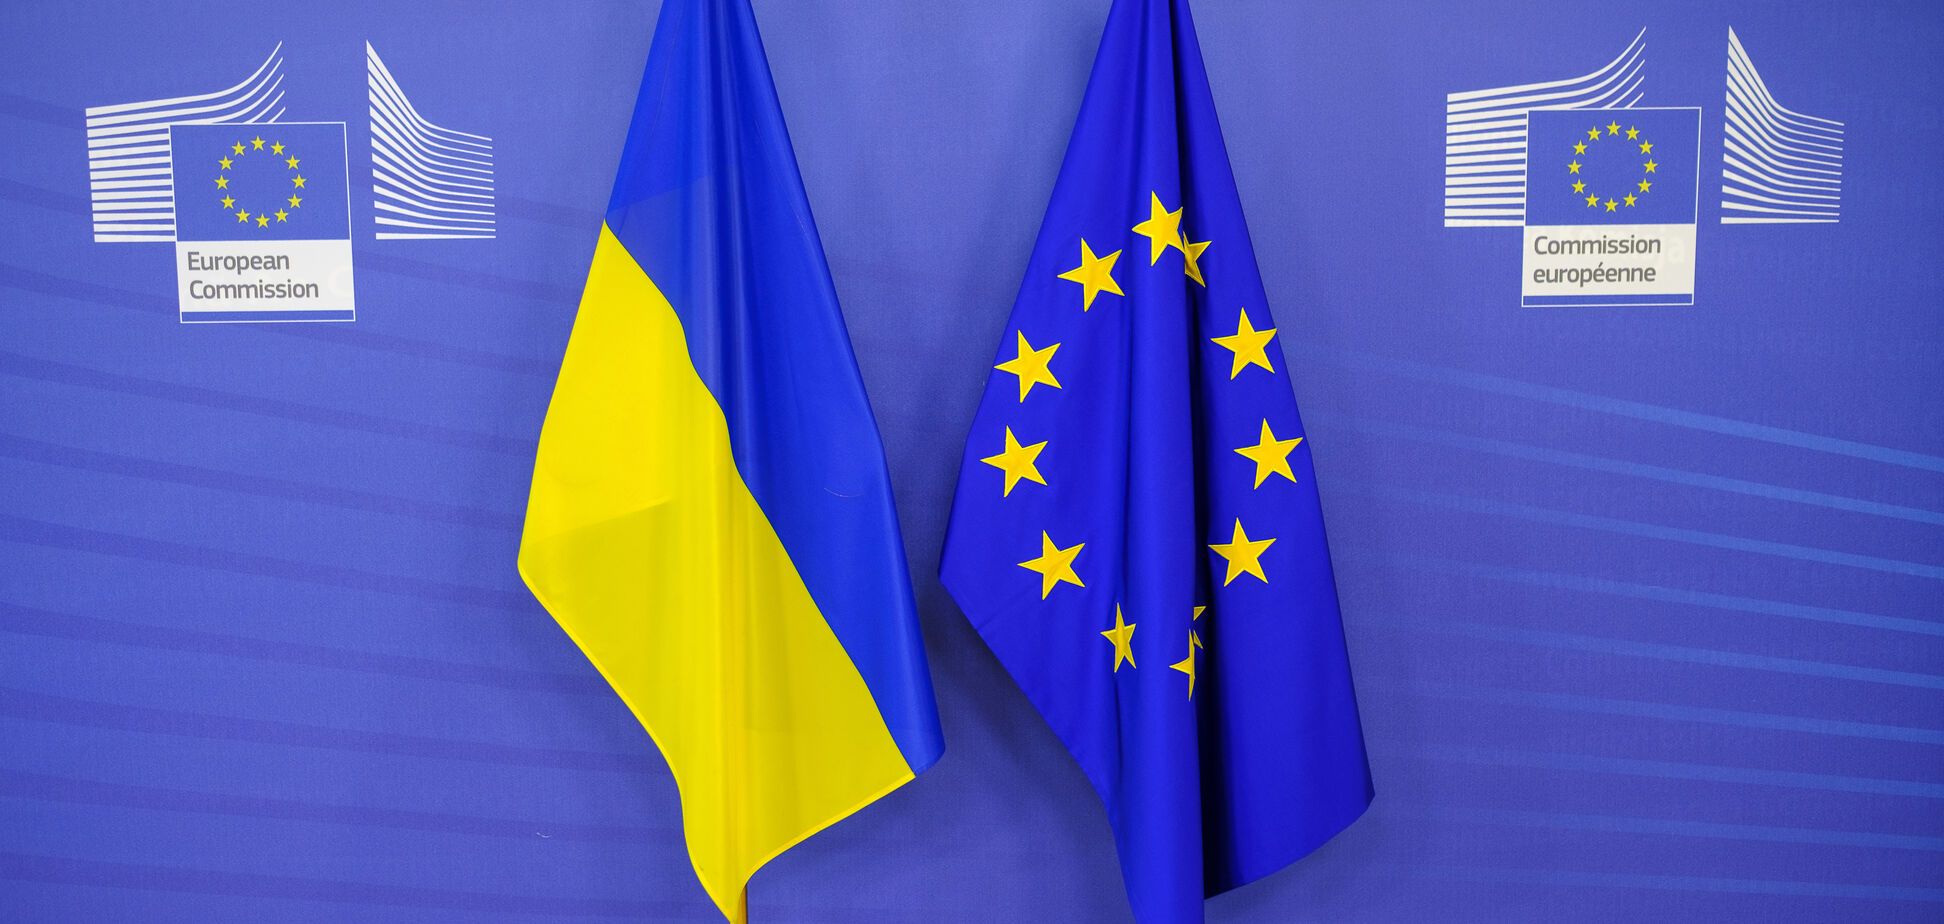 Сдержать агрессию: Украина обратилась к ЕС из-за санкций против России  